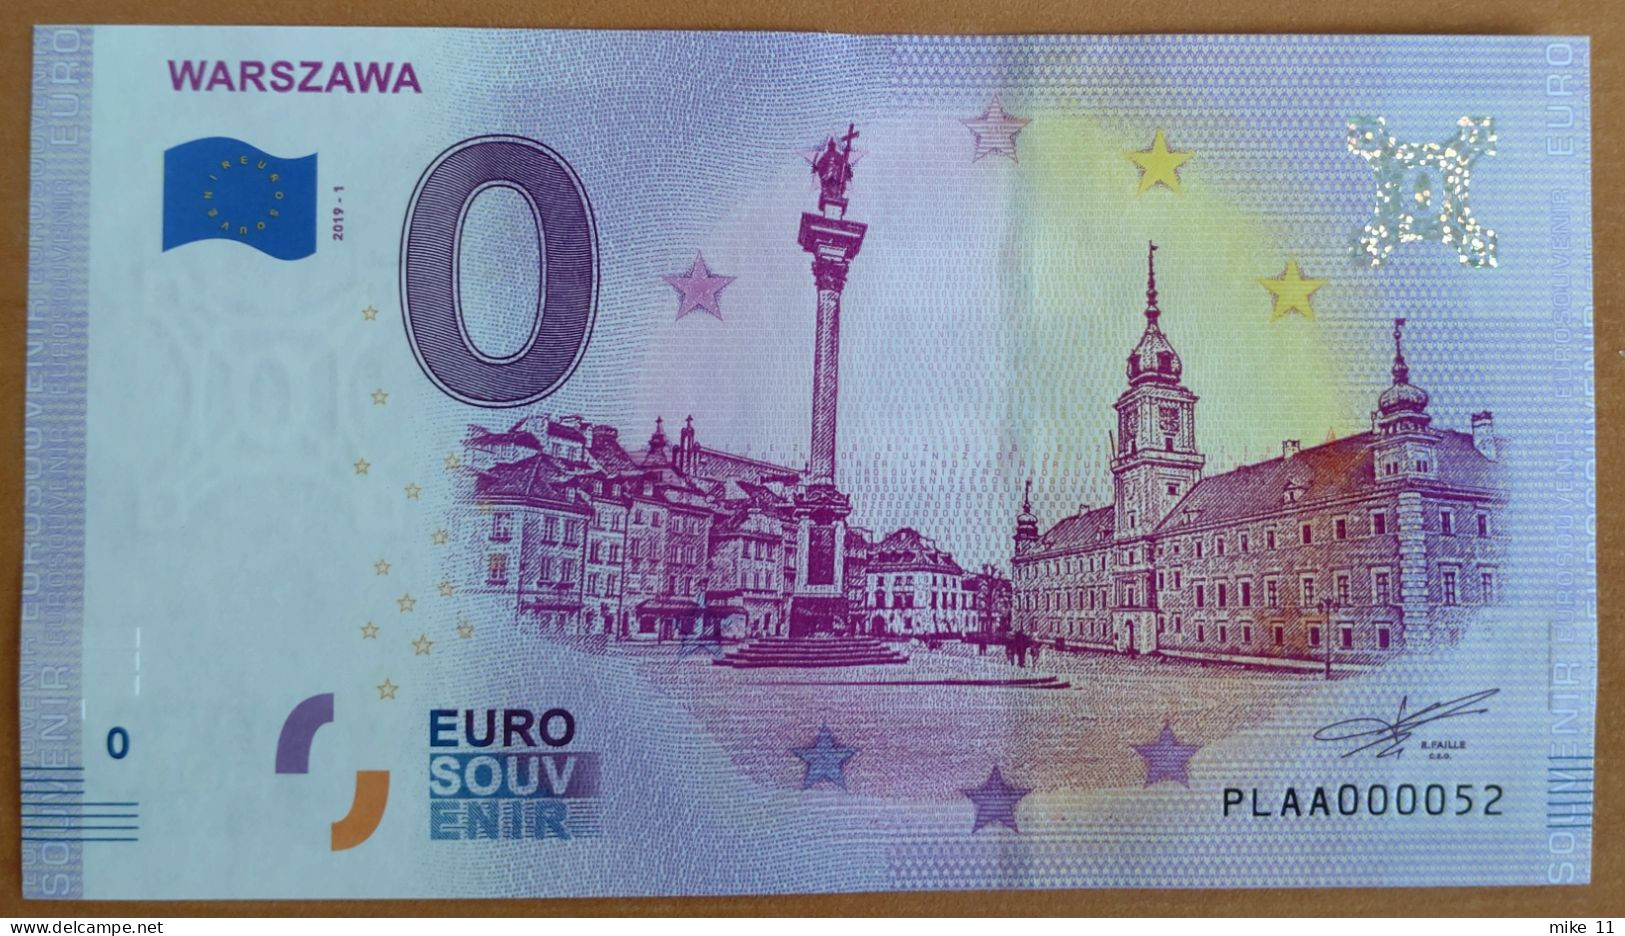 0 Euro Souvenir WARSZAWA Poland PLAA 2019-1 Nr. 52 LOW NUMBER - Autres - Europe